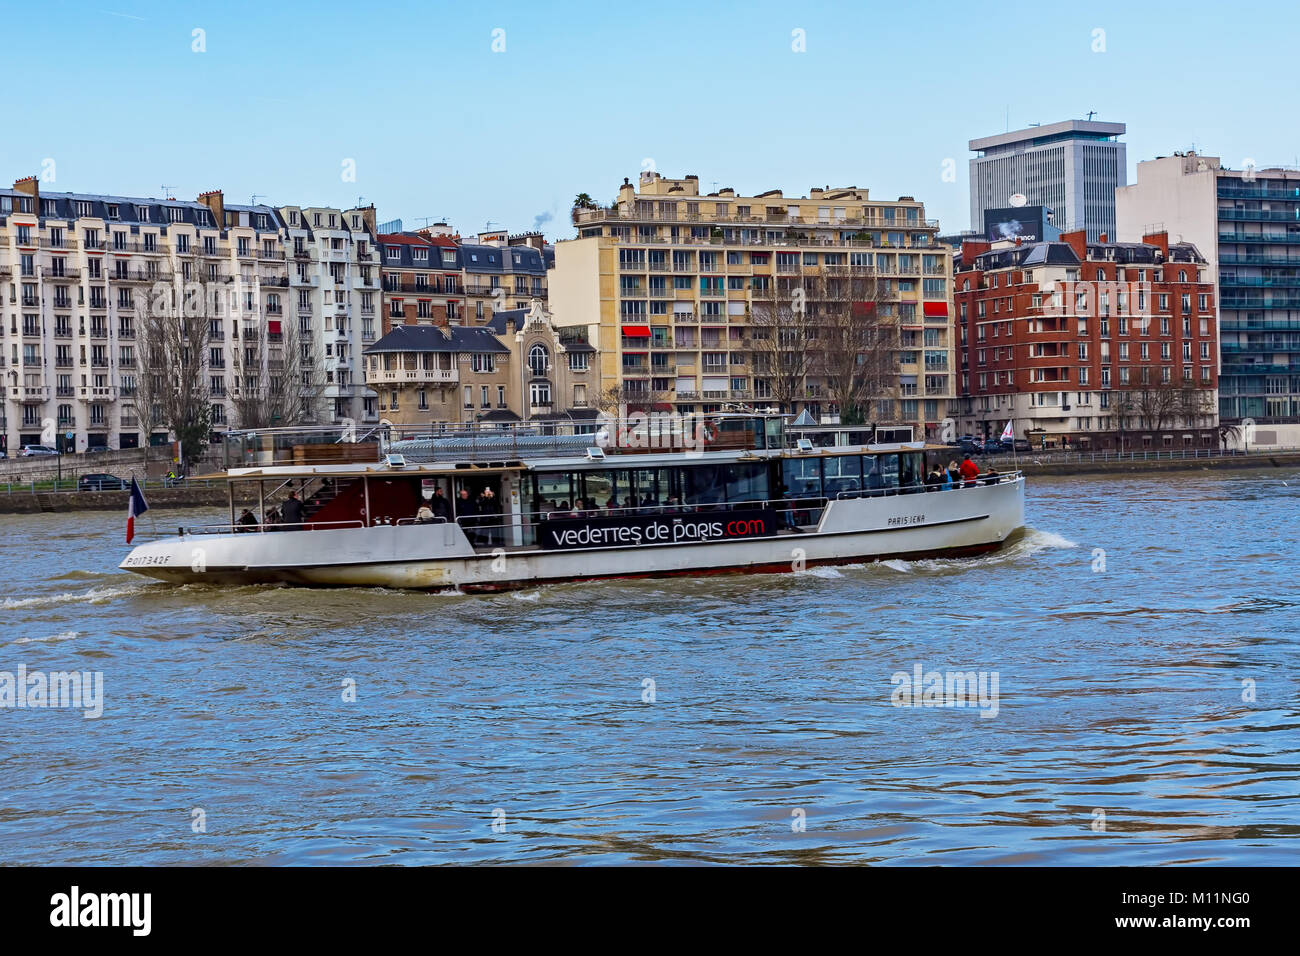 Vedette de Paris over the Seine river - Paris, France Stock Photo